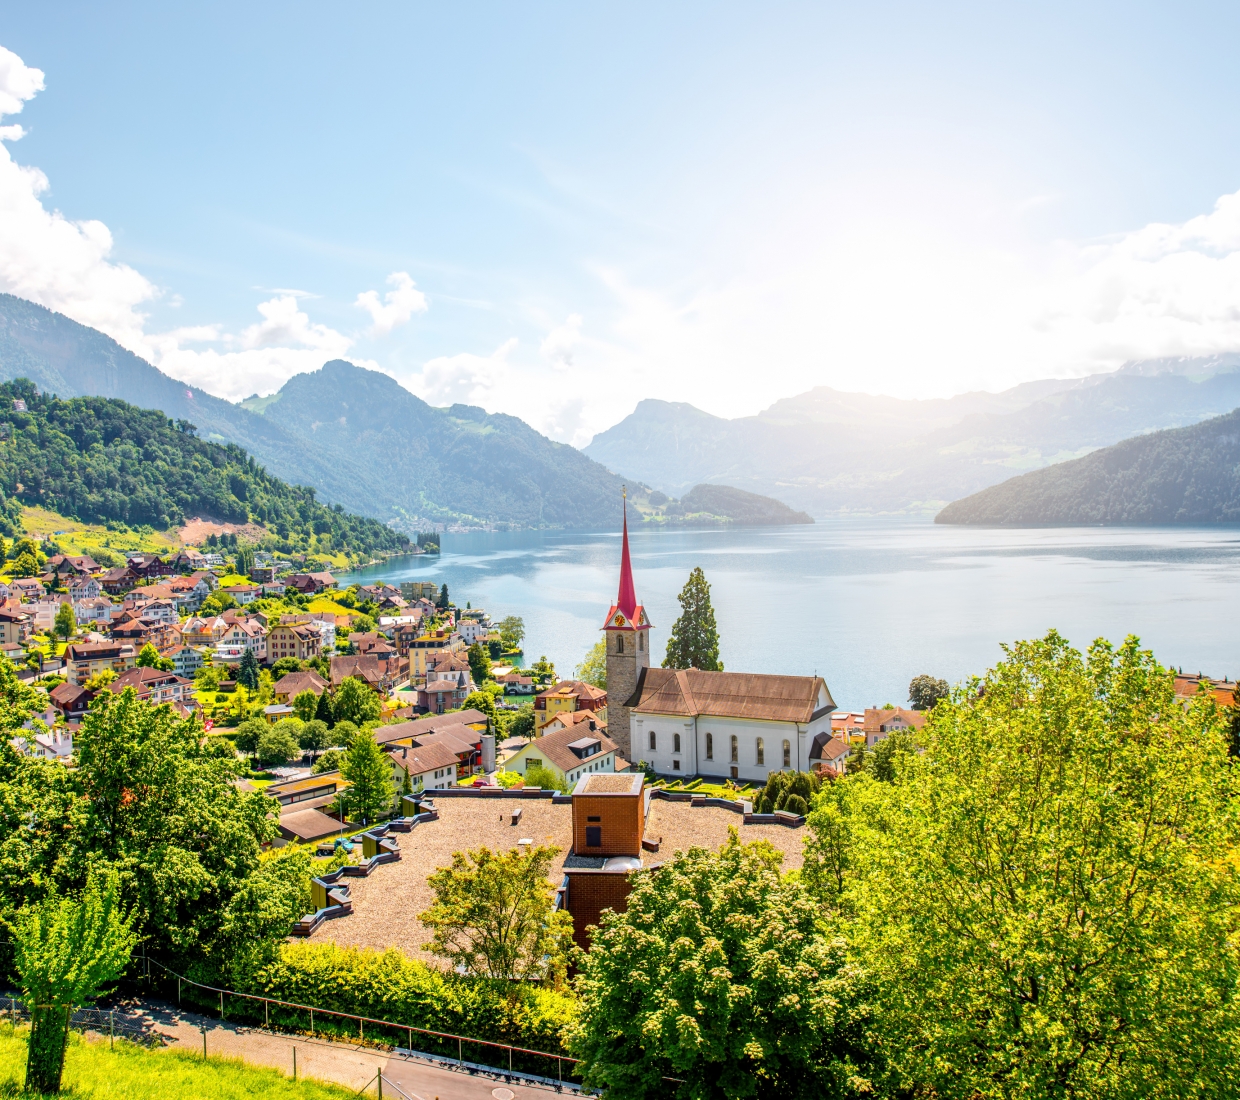 Hotéis boutique, hotéis de charme e turismo rural Lucerne – Lake of Lucerne